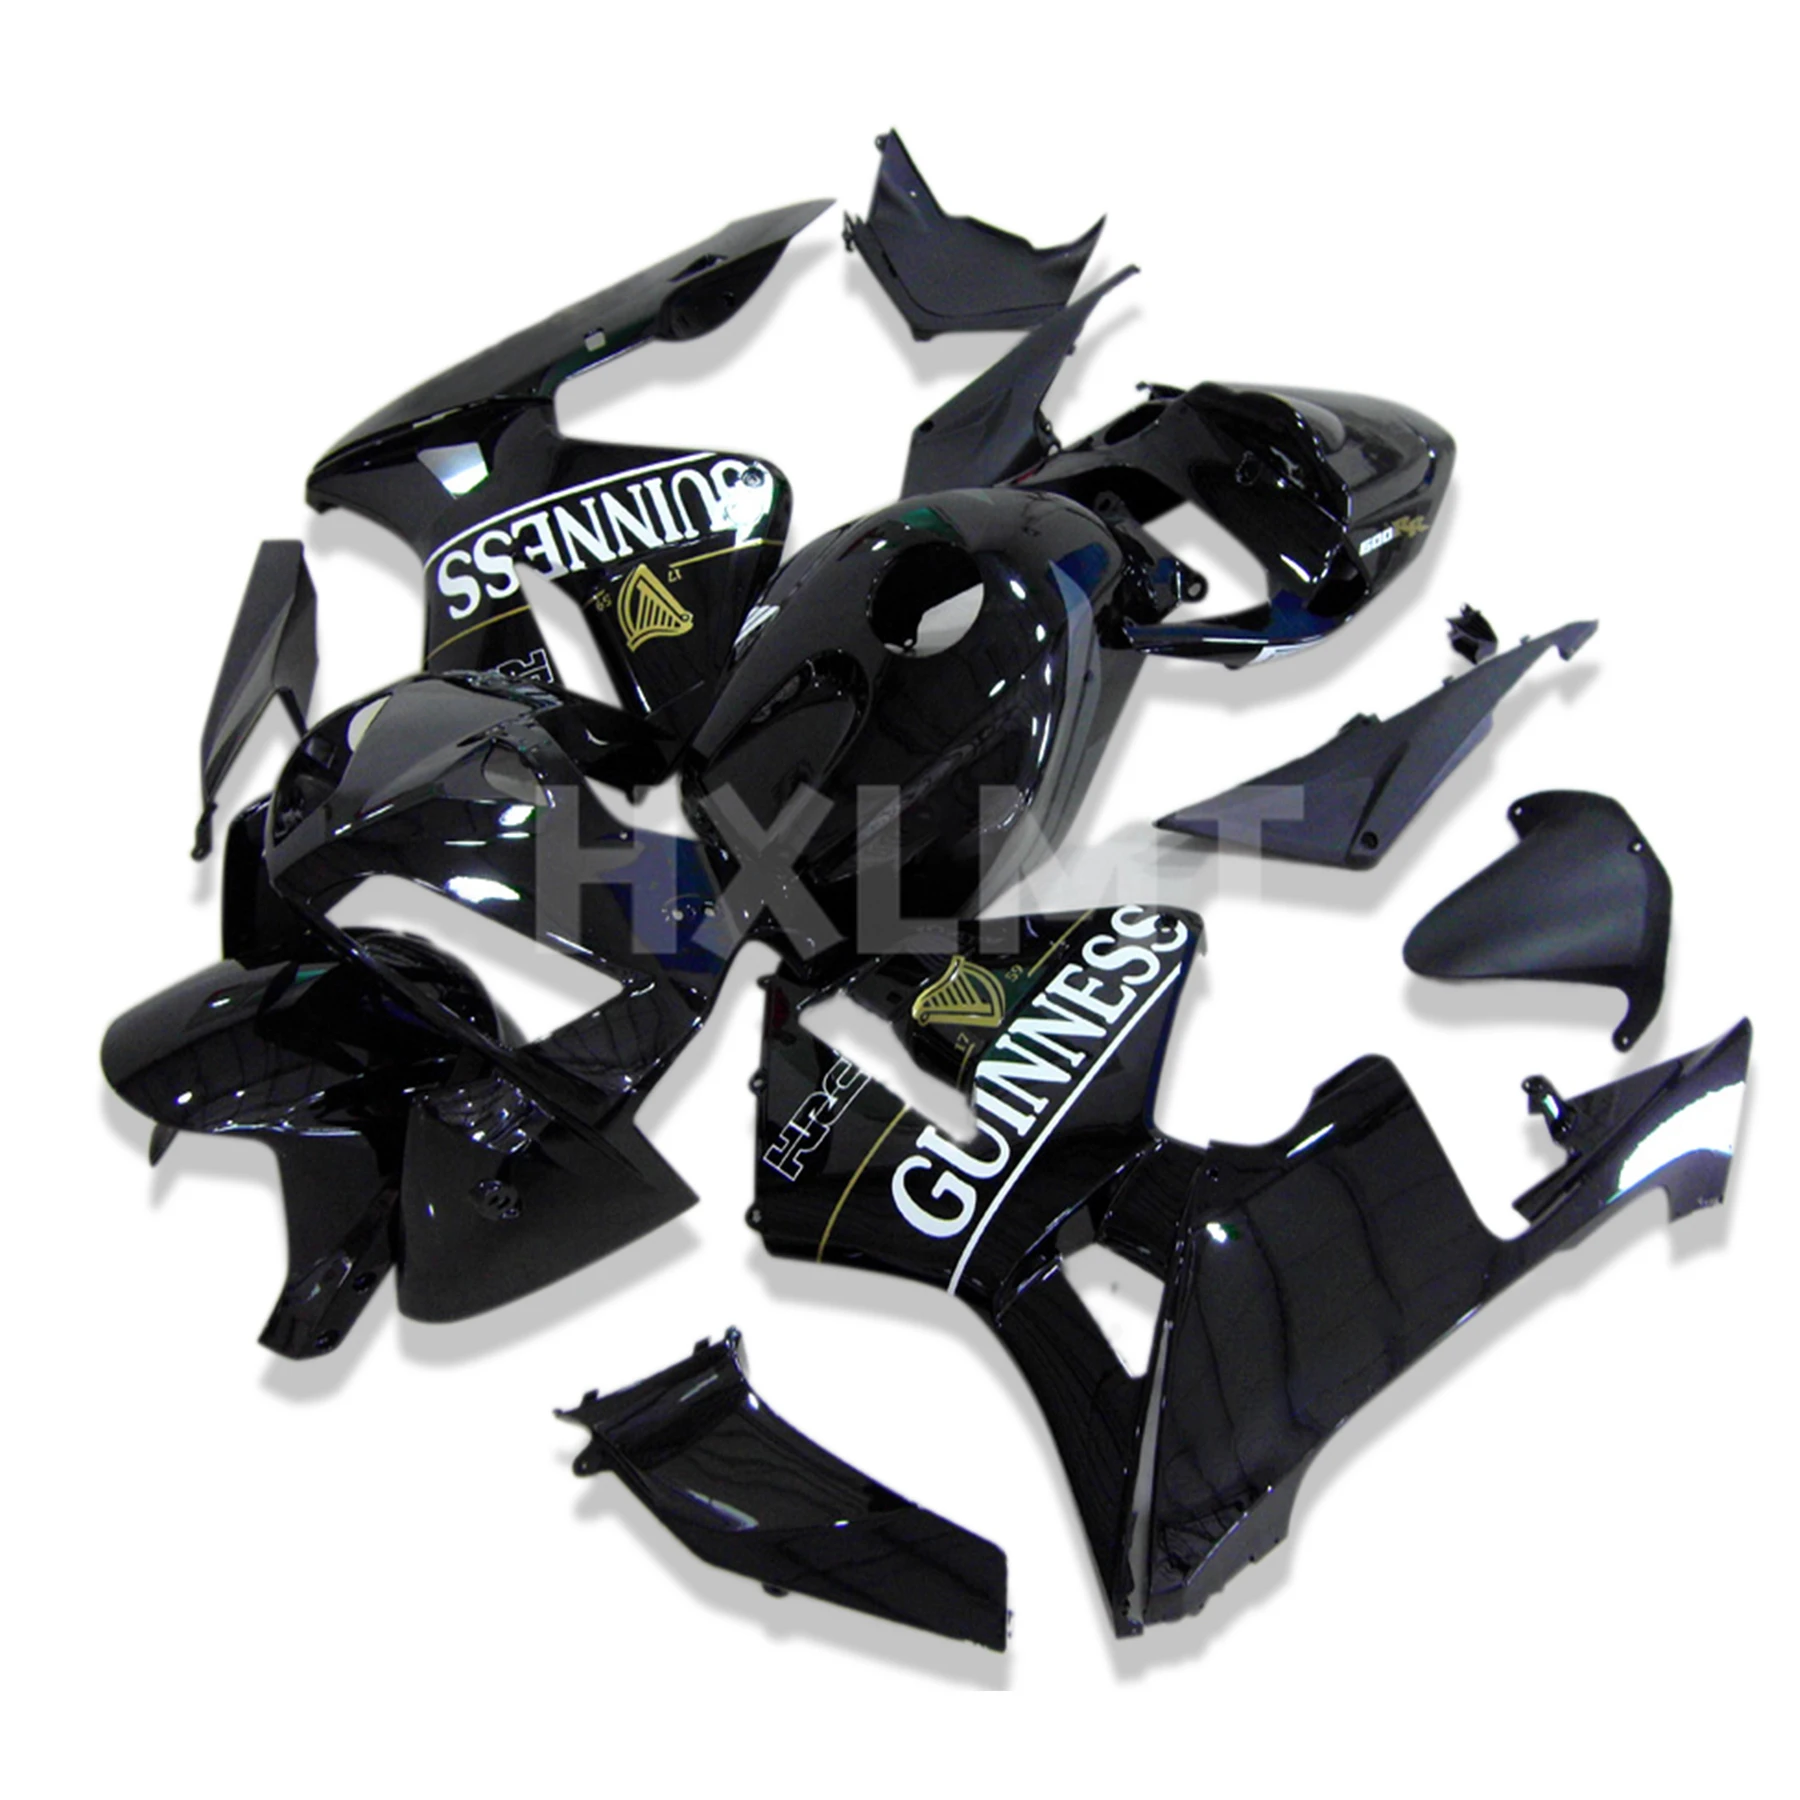 

Motorcycle Fairing Set Body Kit Plastic For Honda CBR600RR CBR600 RR CBR 600RR 2005 2006 Accessories Full Bodywork Cowl Cover